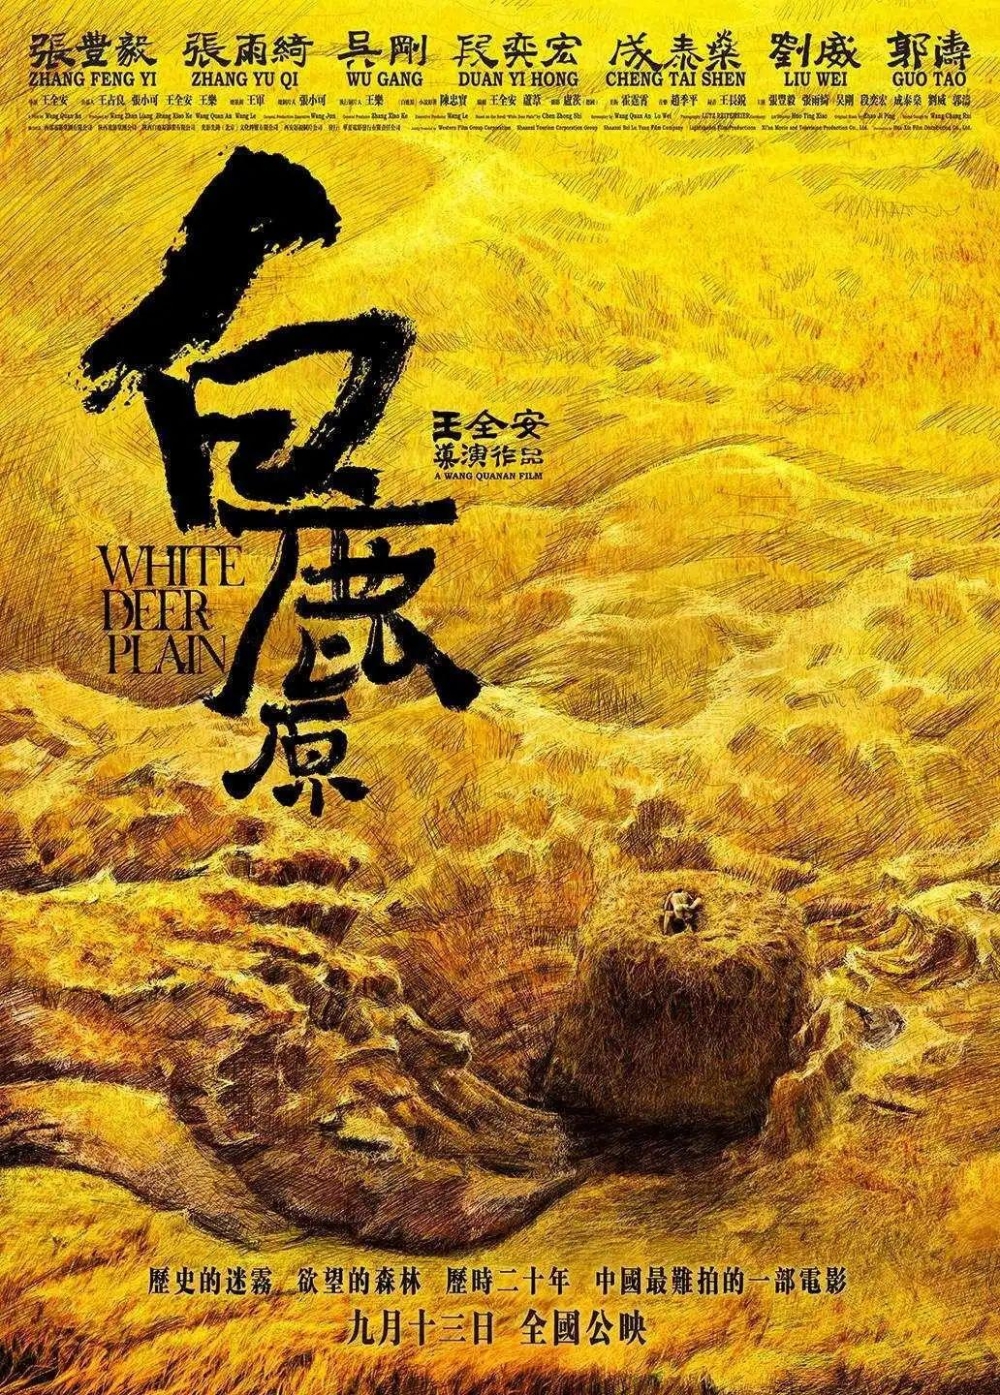 优设名人榜第1期!中国电影海报设计第一人:黄海